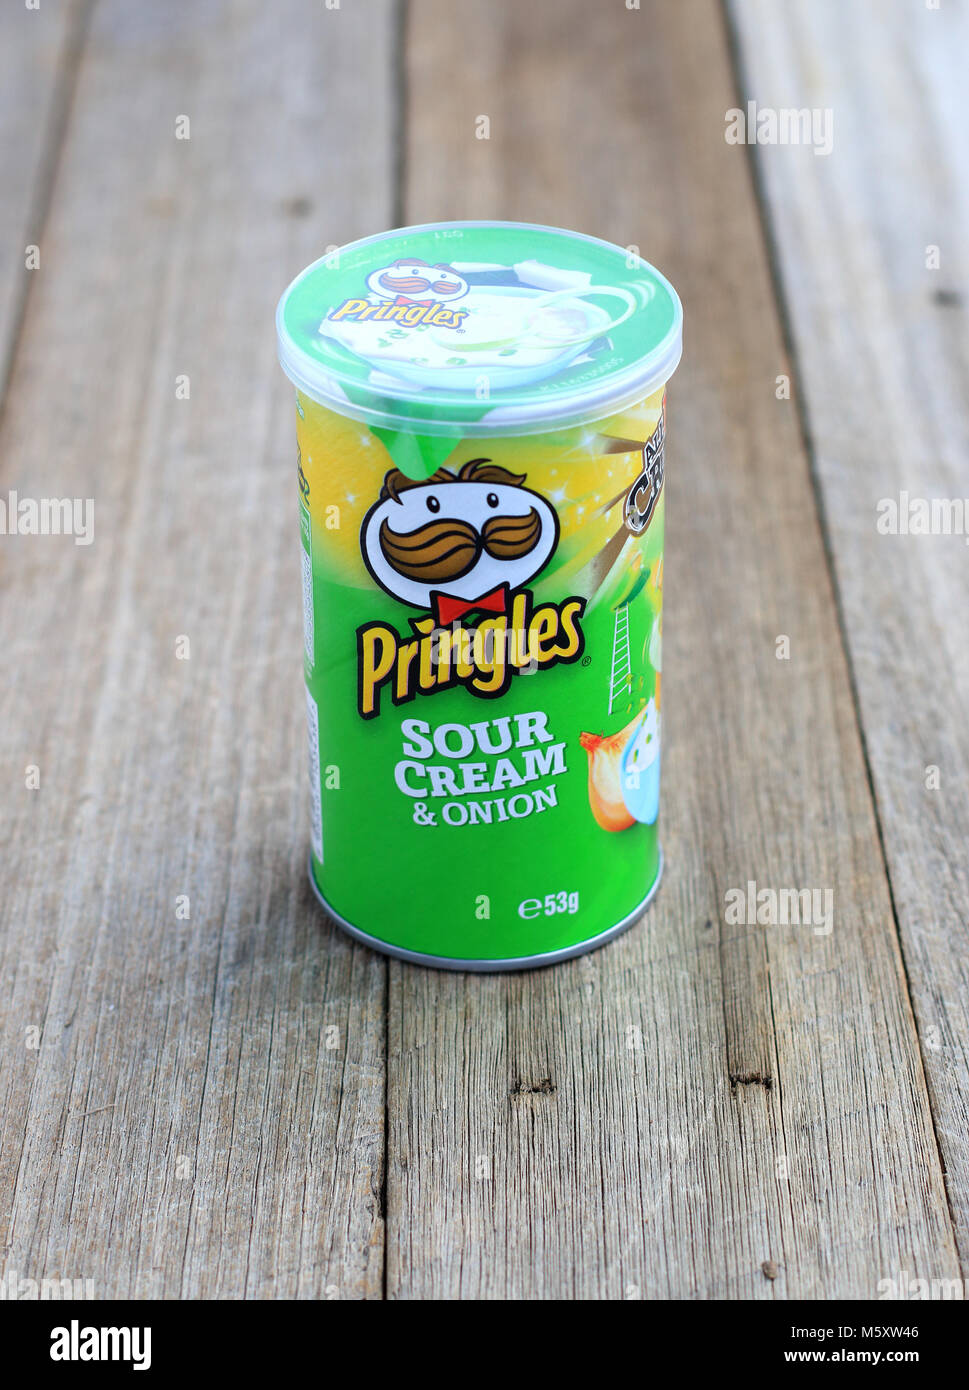 Crema agria y cebolla patatas chips Pringles Foto de stock